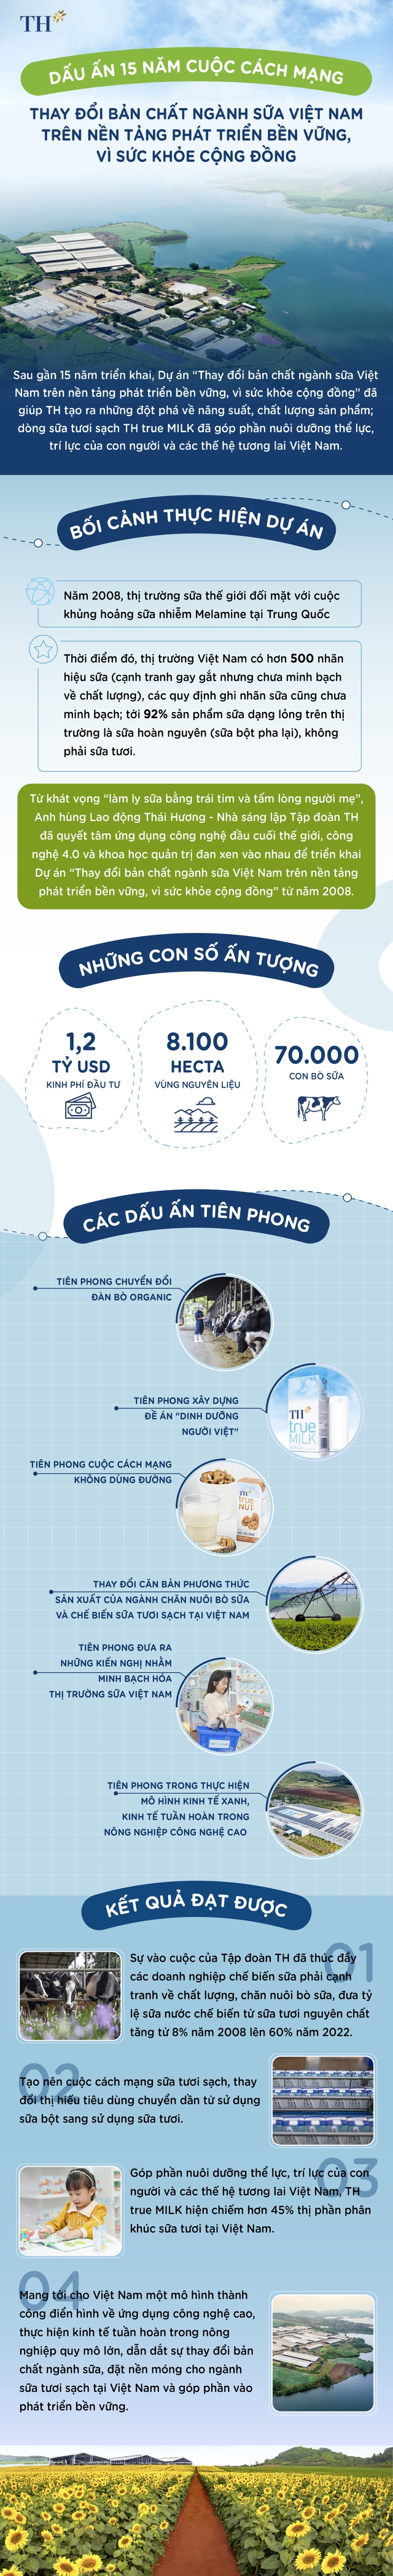 Dấu ấn 15 năm cuộc cách mạng thay đổi bản chất ngành sữa Việt Nam trên nền tảng phát triển bền vững, vì sức khỏe cộng đồng - Ảnh 1.